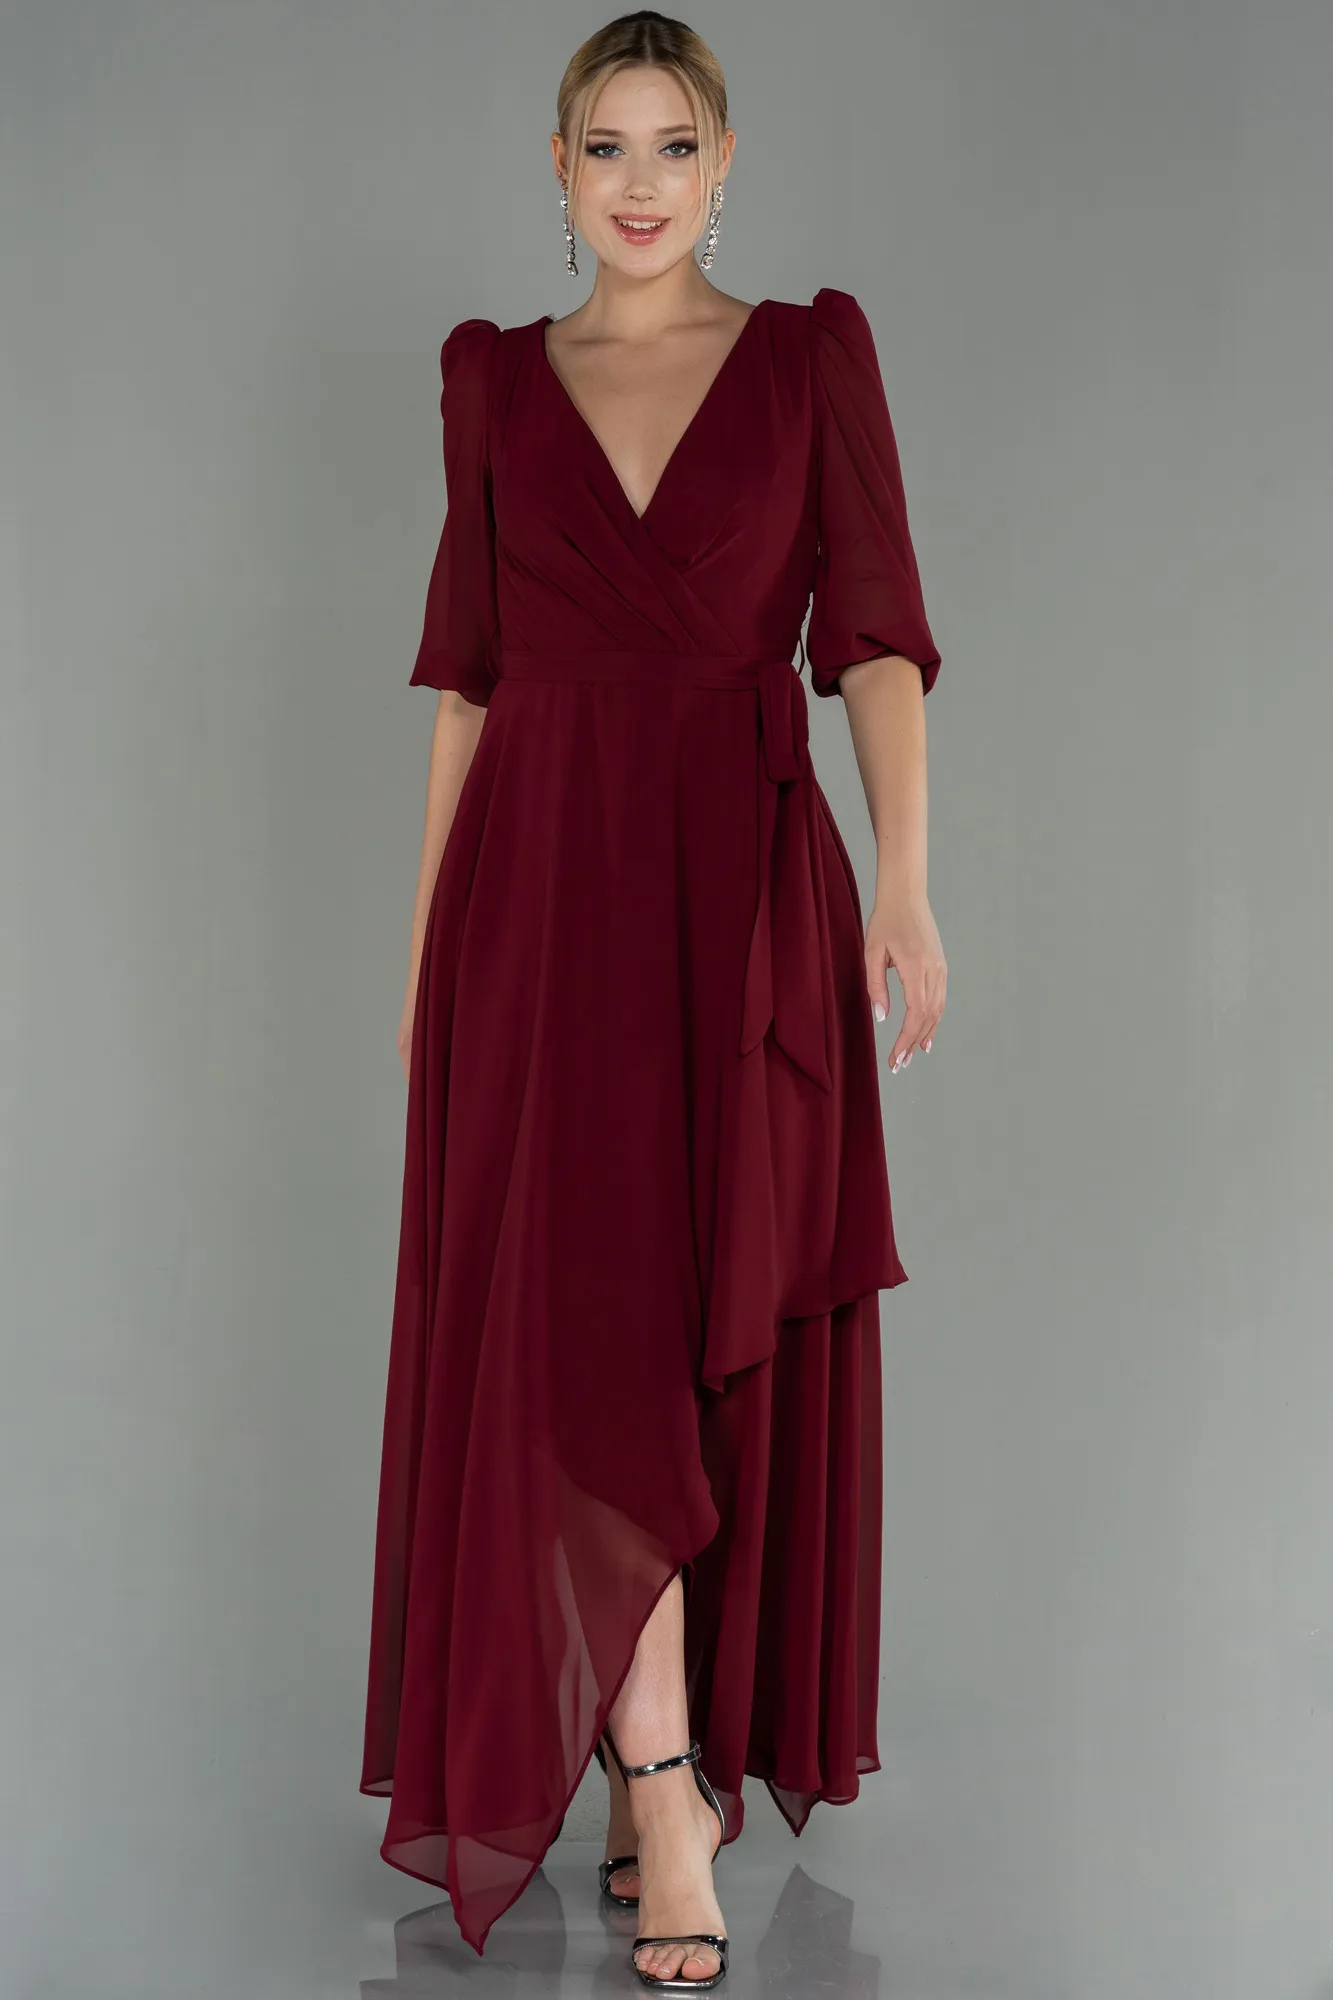 Burgundy-Long Chiffon Invitation Dress ABU1729